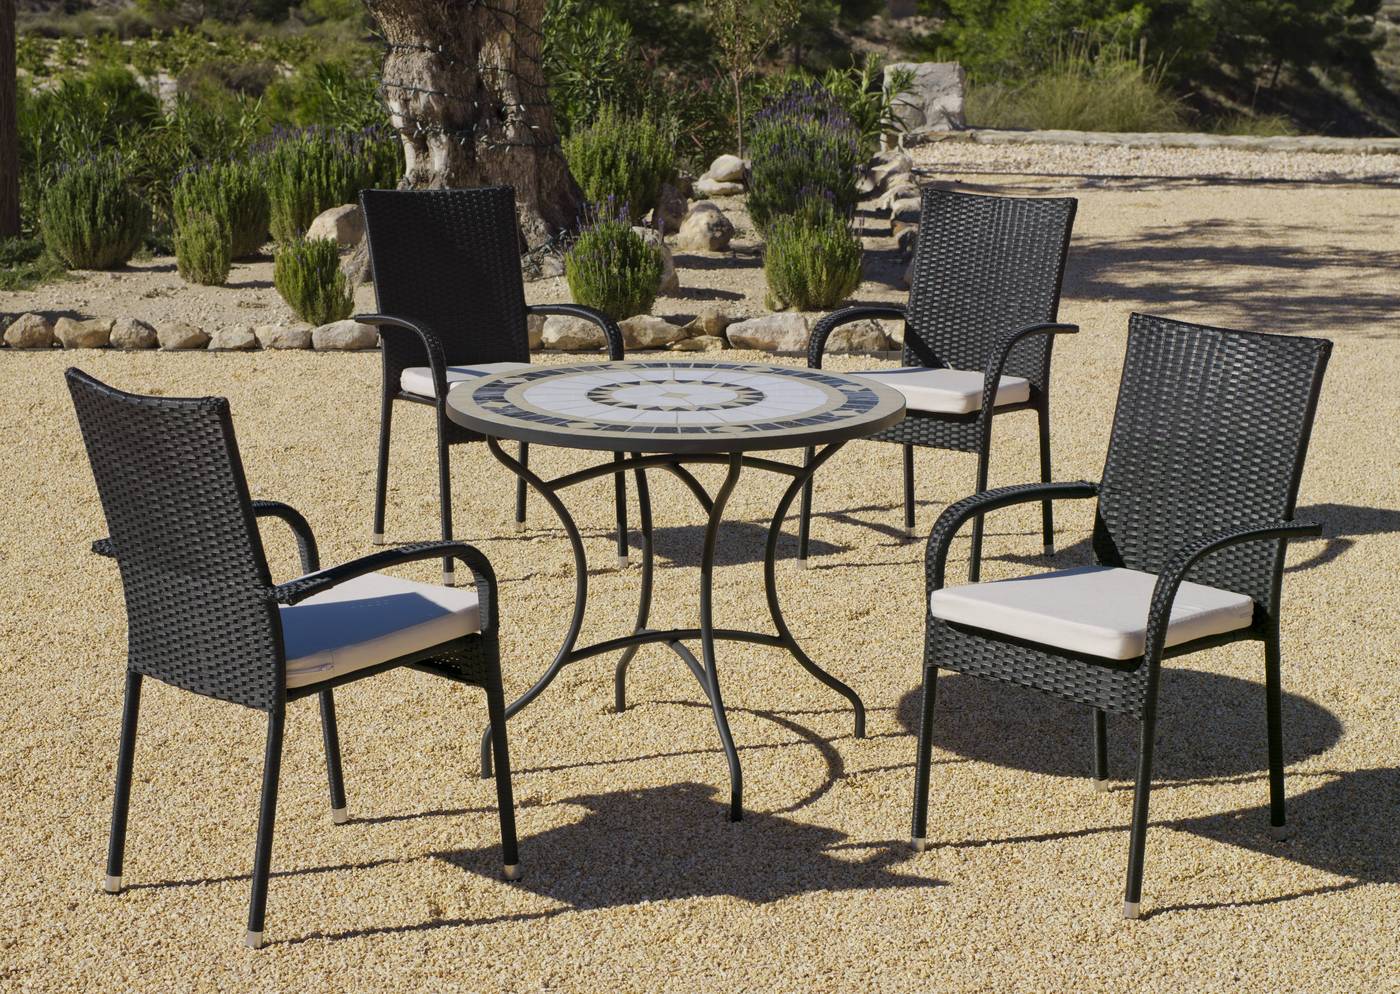 Conjunto para jardín color gris antracita: 1 mesa redonda 75 cm. de forja con panel mosaico + 4 sillones de ratán sintético